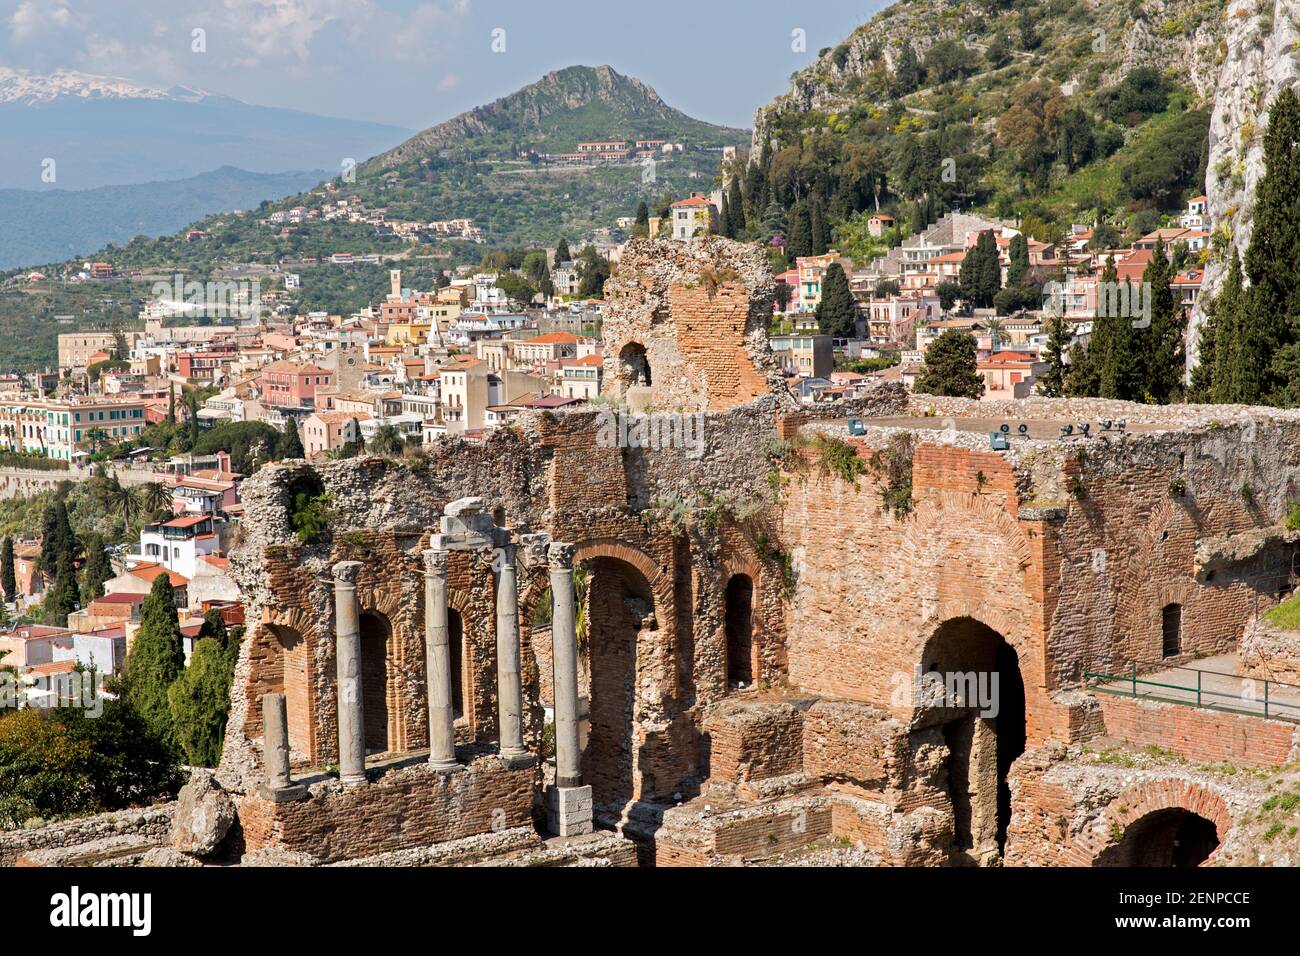 Italien, Sizilien, Taormina, das griechische Theater, mit der Stadt Taormina und dem Ätna im Hintergrund. Stockfoto